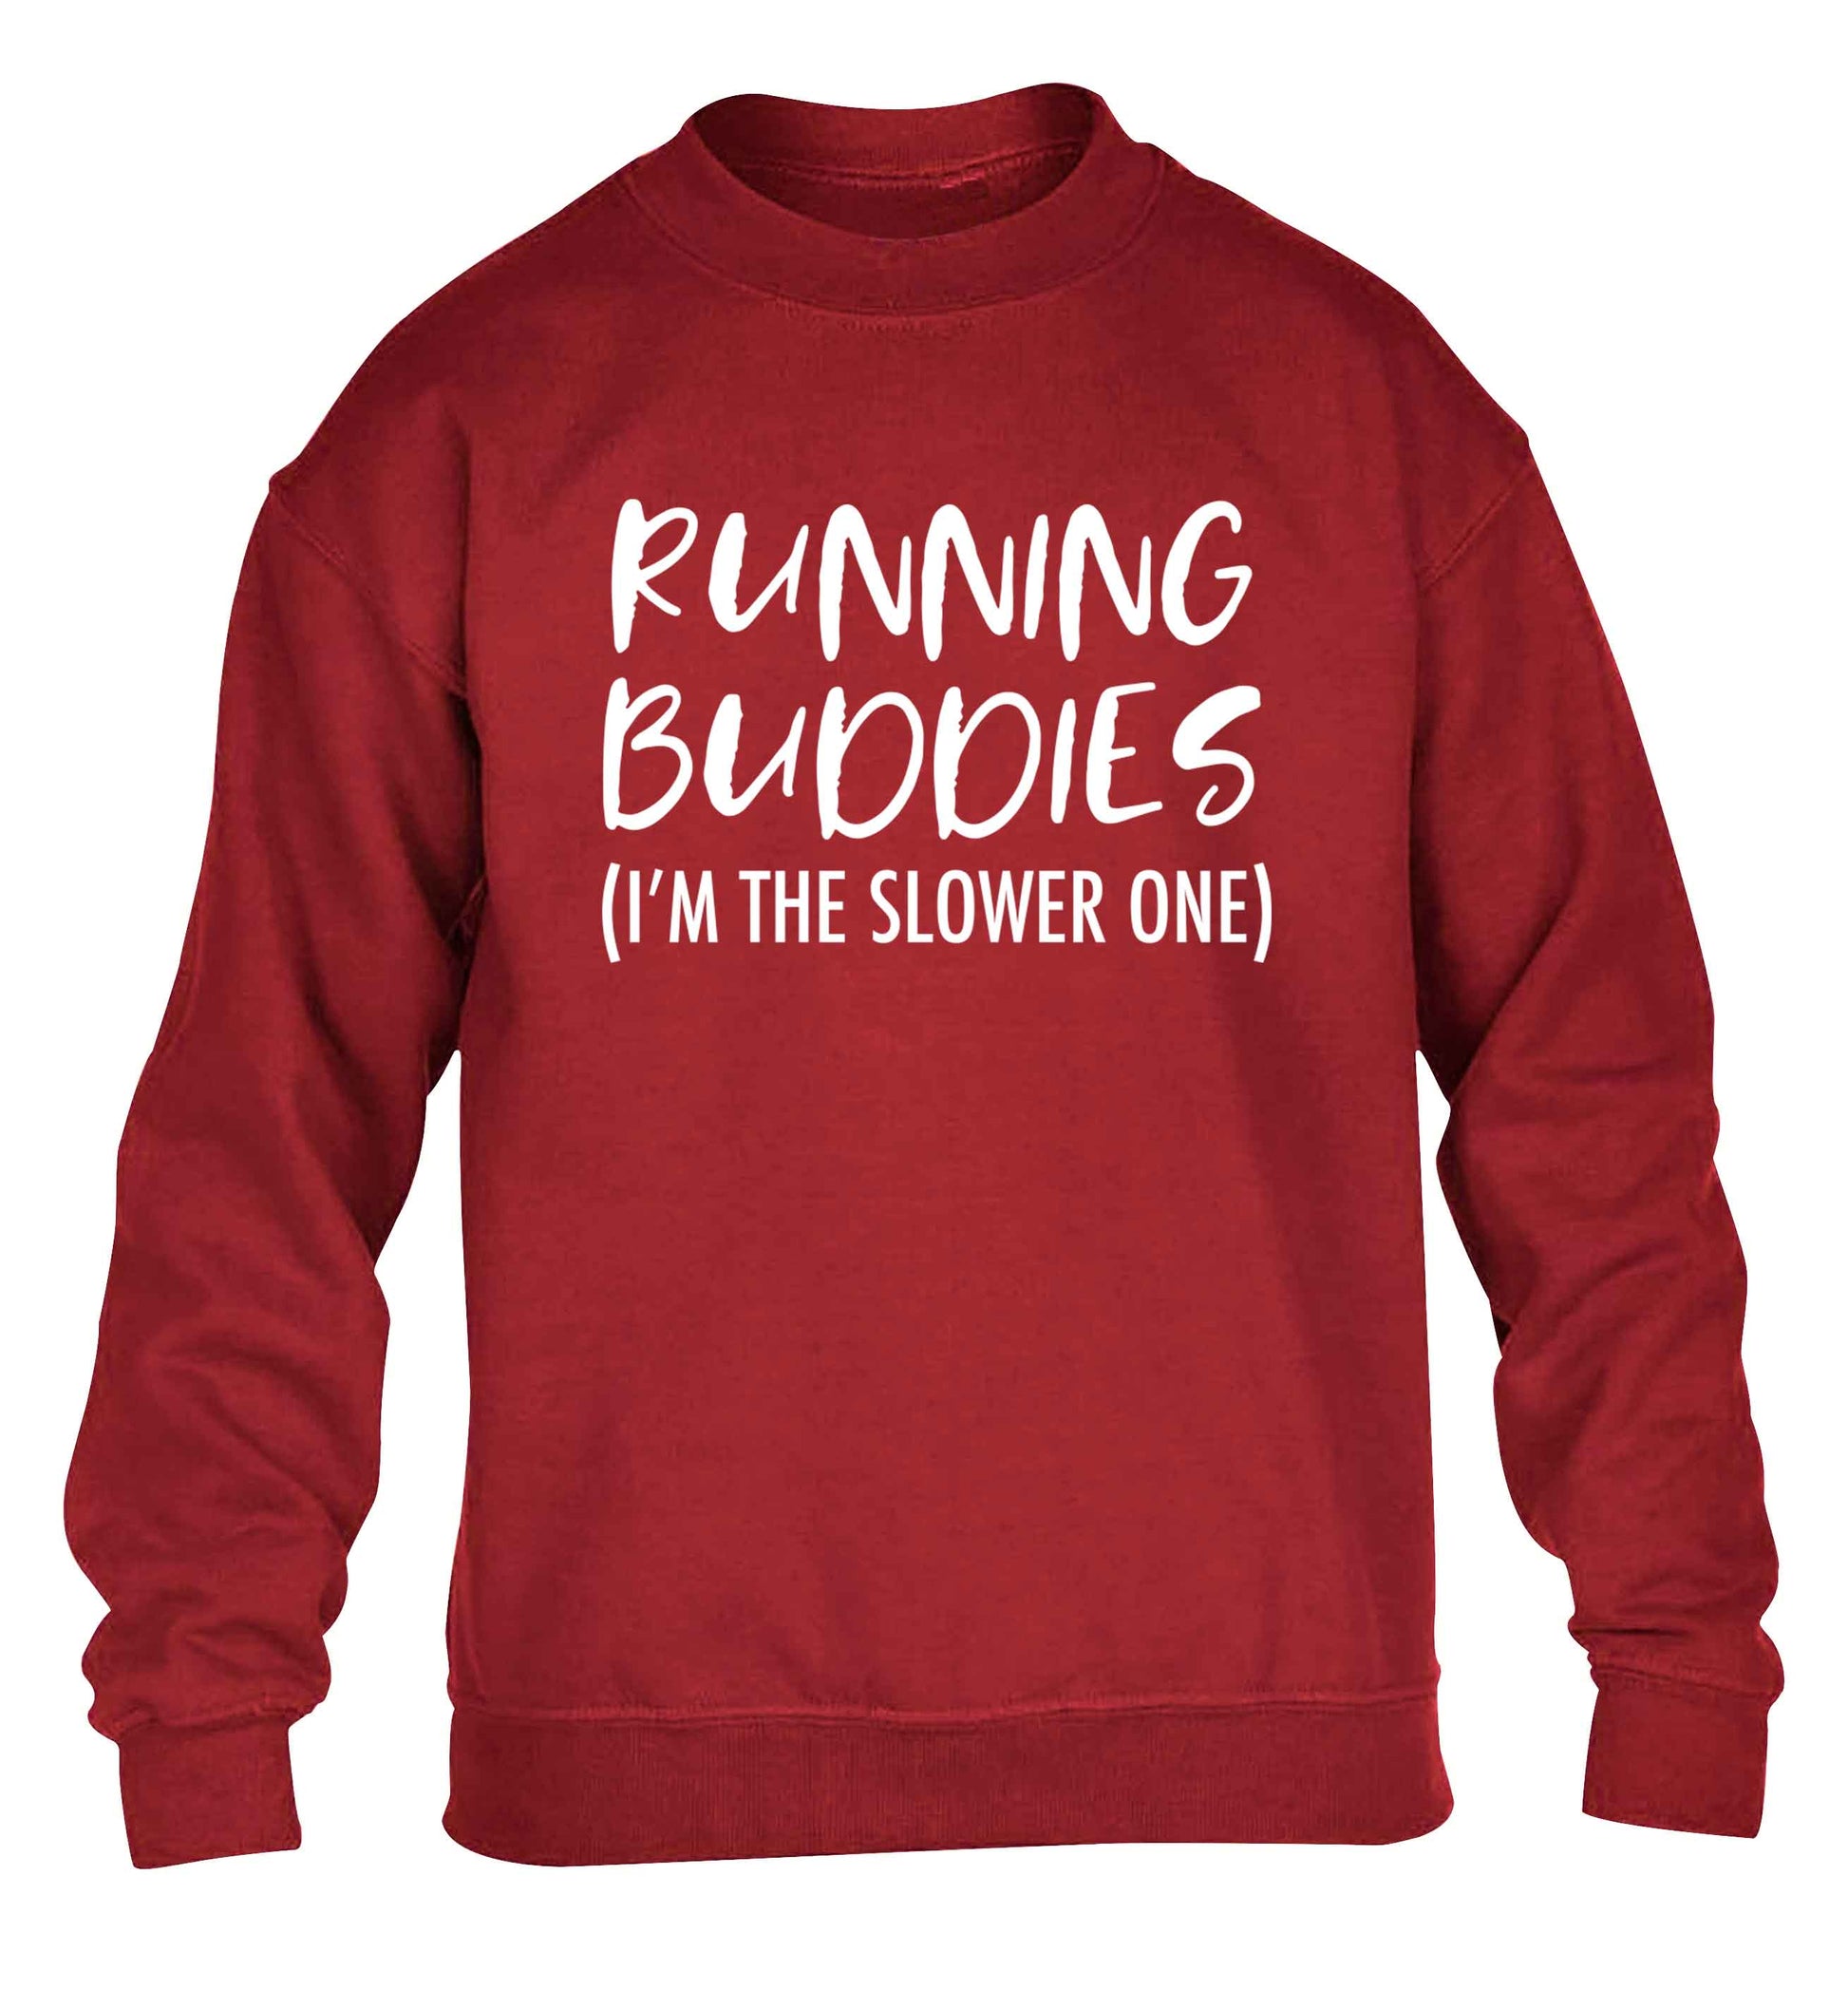 Running buddies (I'm the slower one) children's grey sweater 12-13 Years